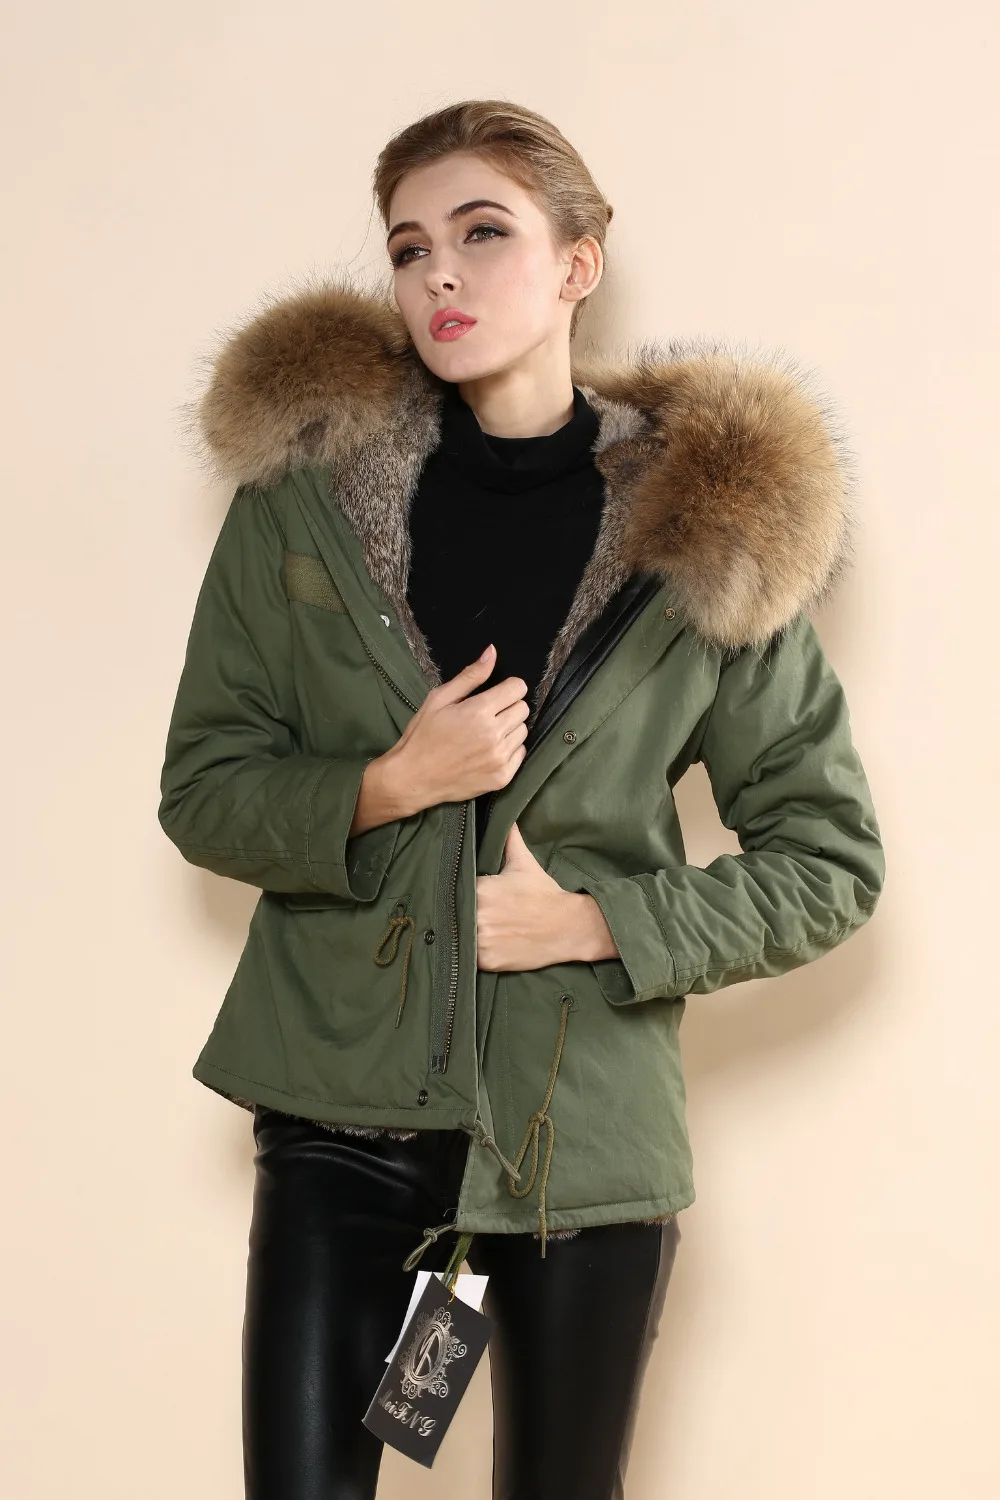 Название бренда популярное в Корее звезда Mrs Женская мода Geniune меховое пальто Mr furs